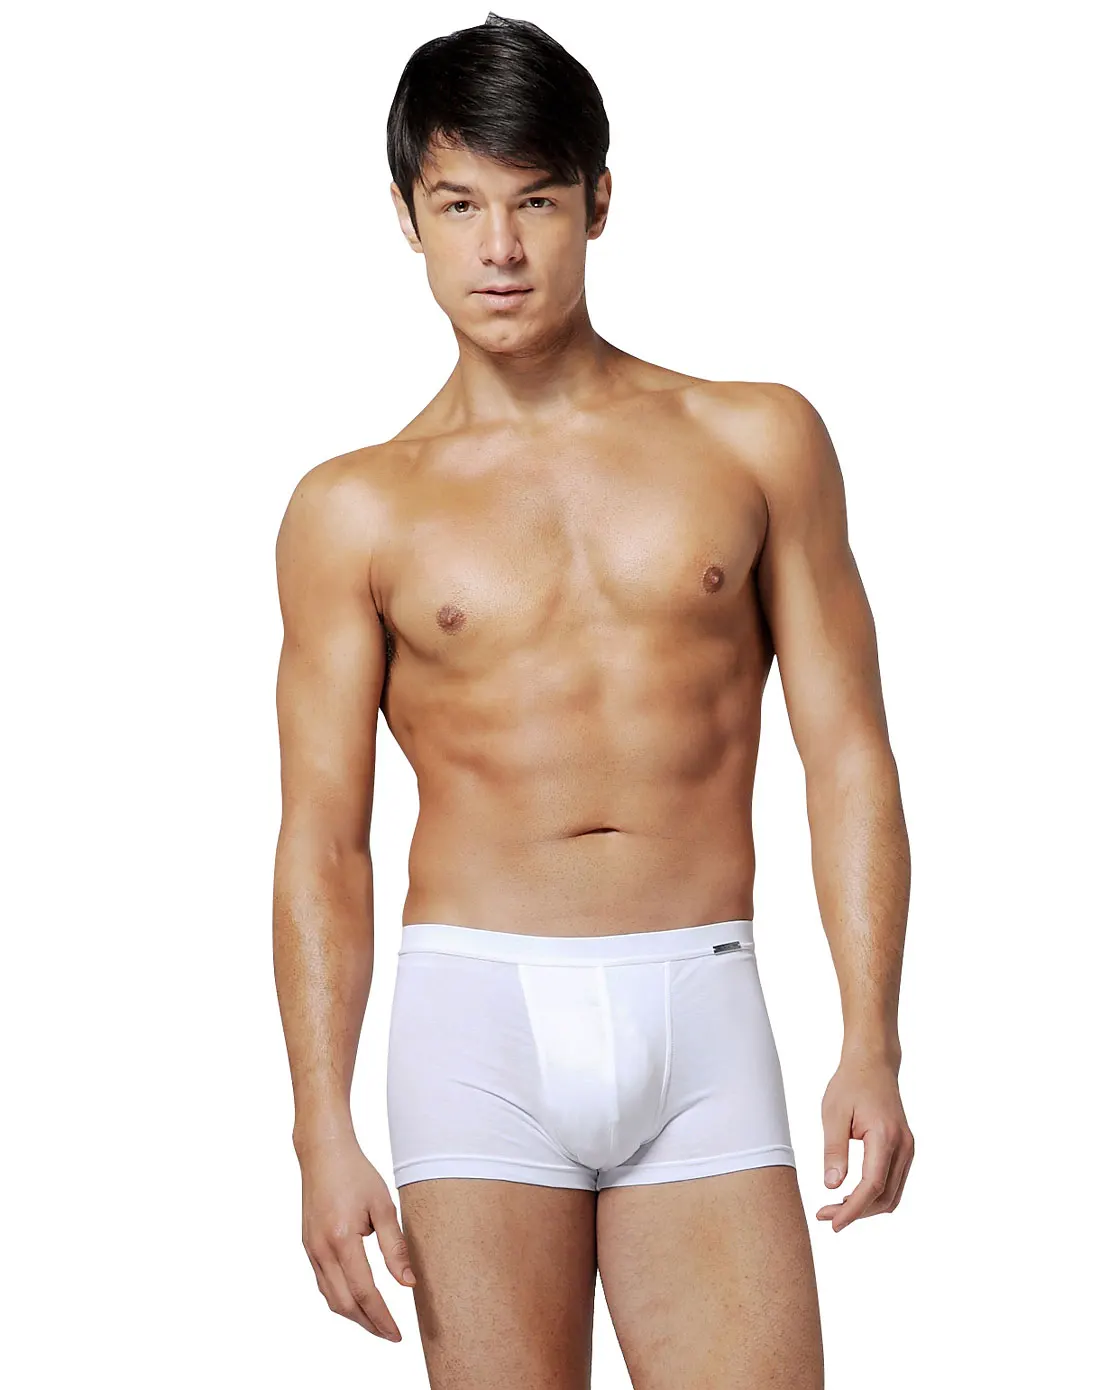 White Men's Boxers Briefs Underwear High Quality Good Price ...